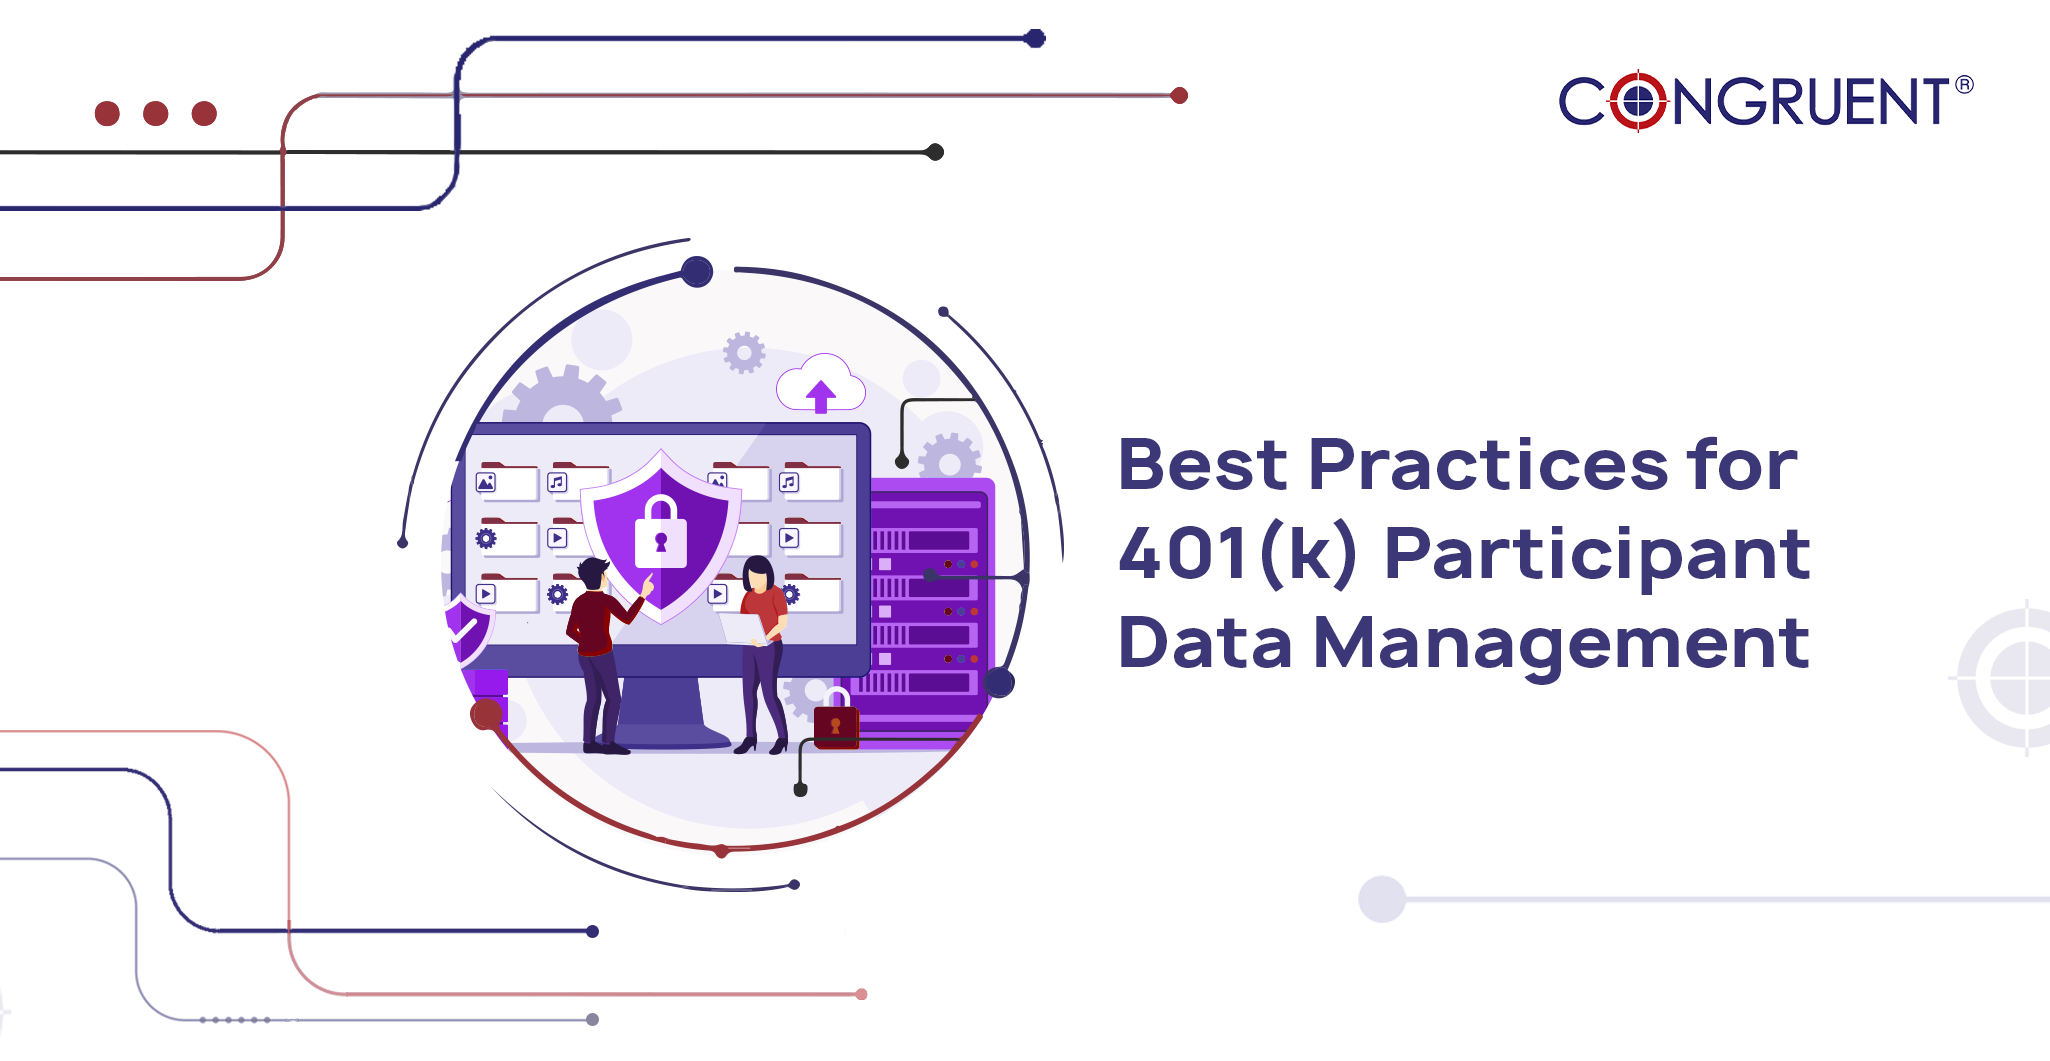 Best Practices for 401(k) Participant Data Management